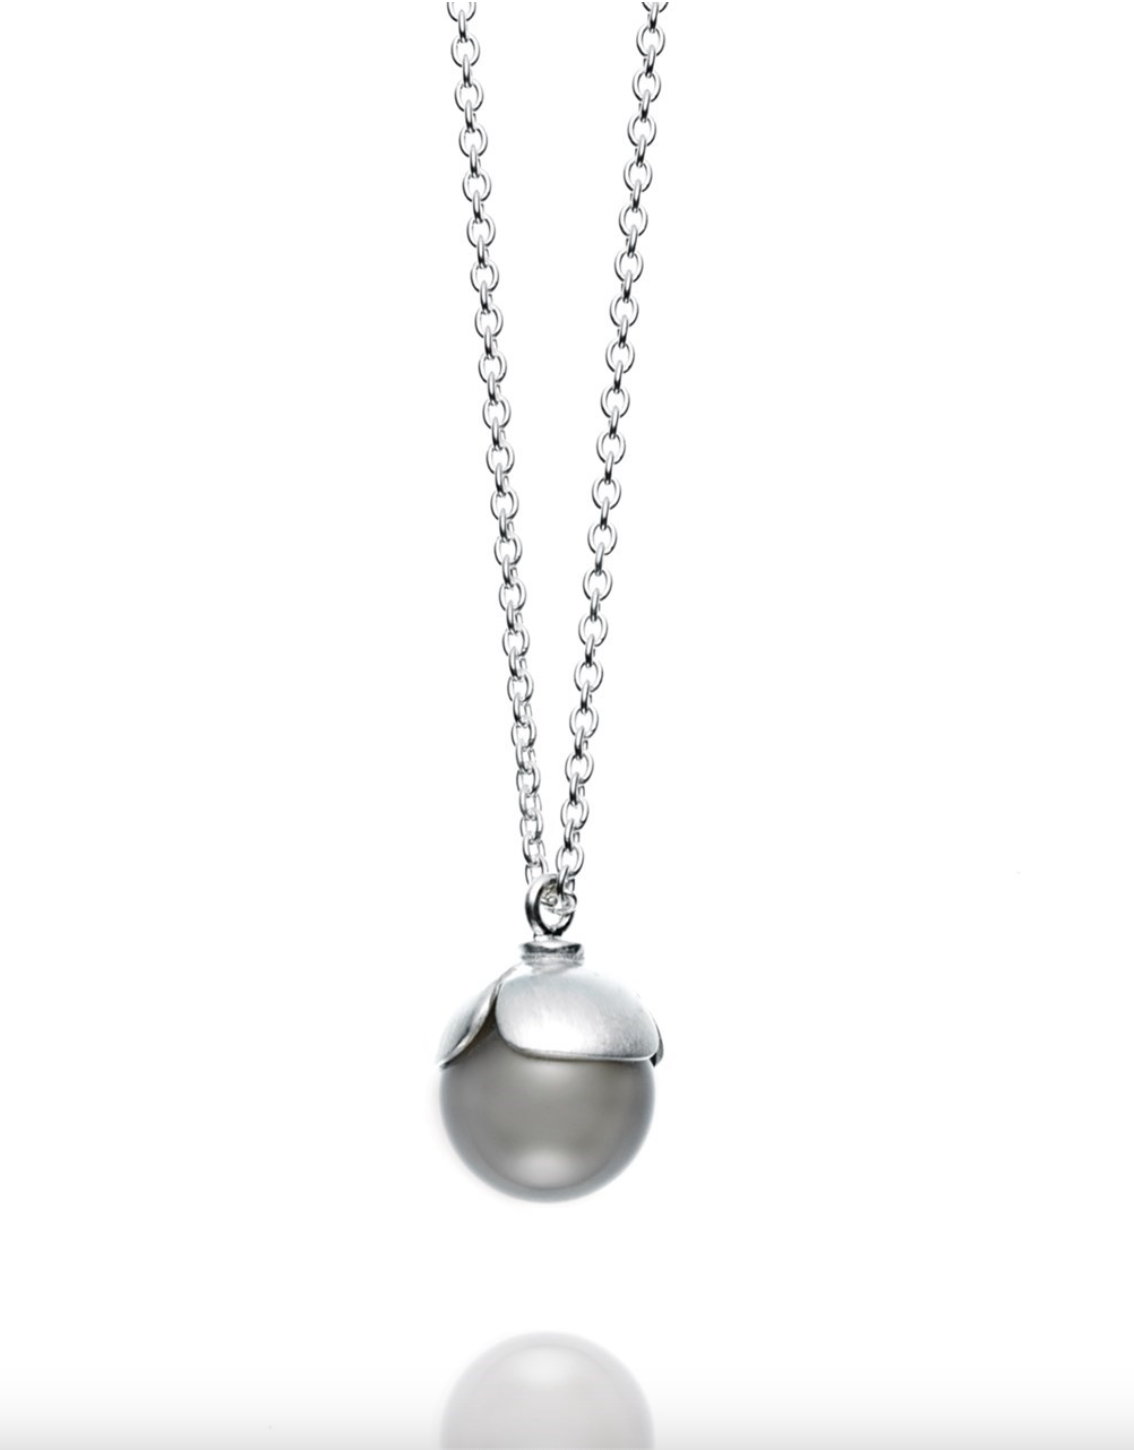 Nada Silver Gray necklace